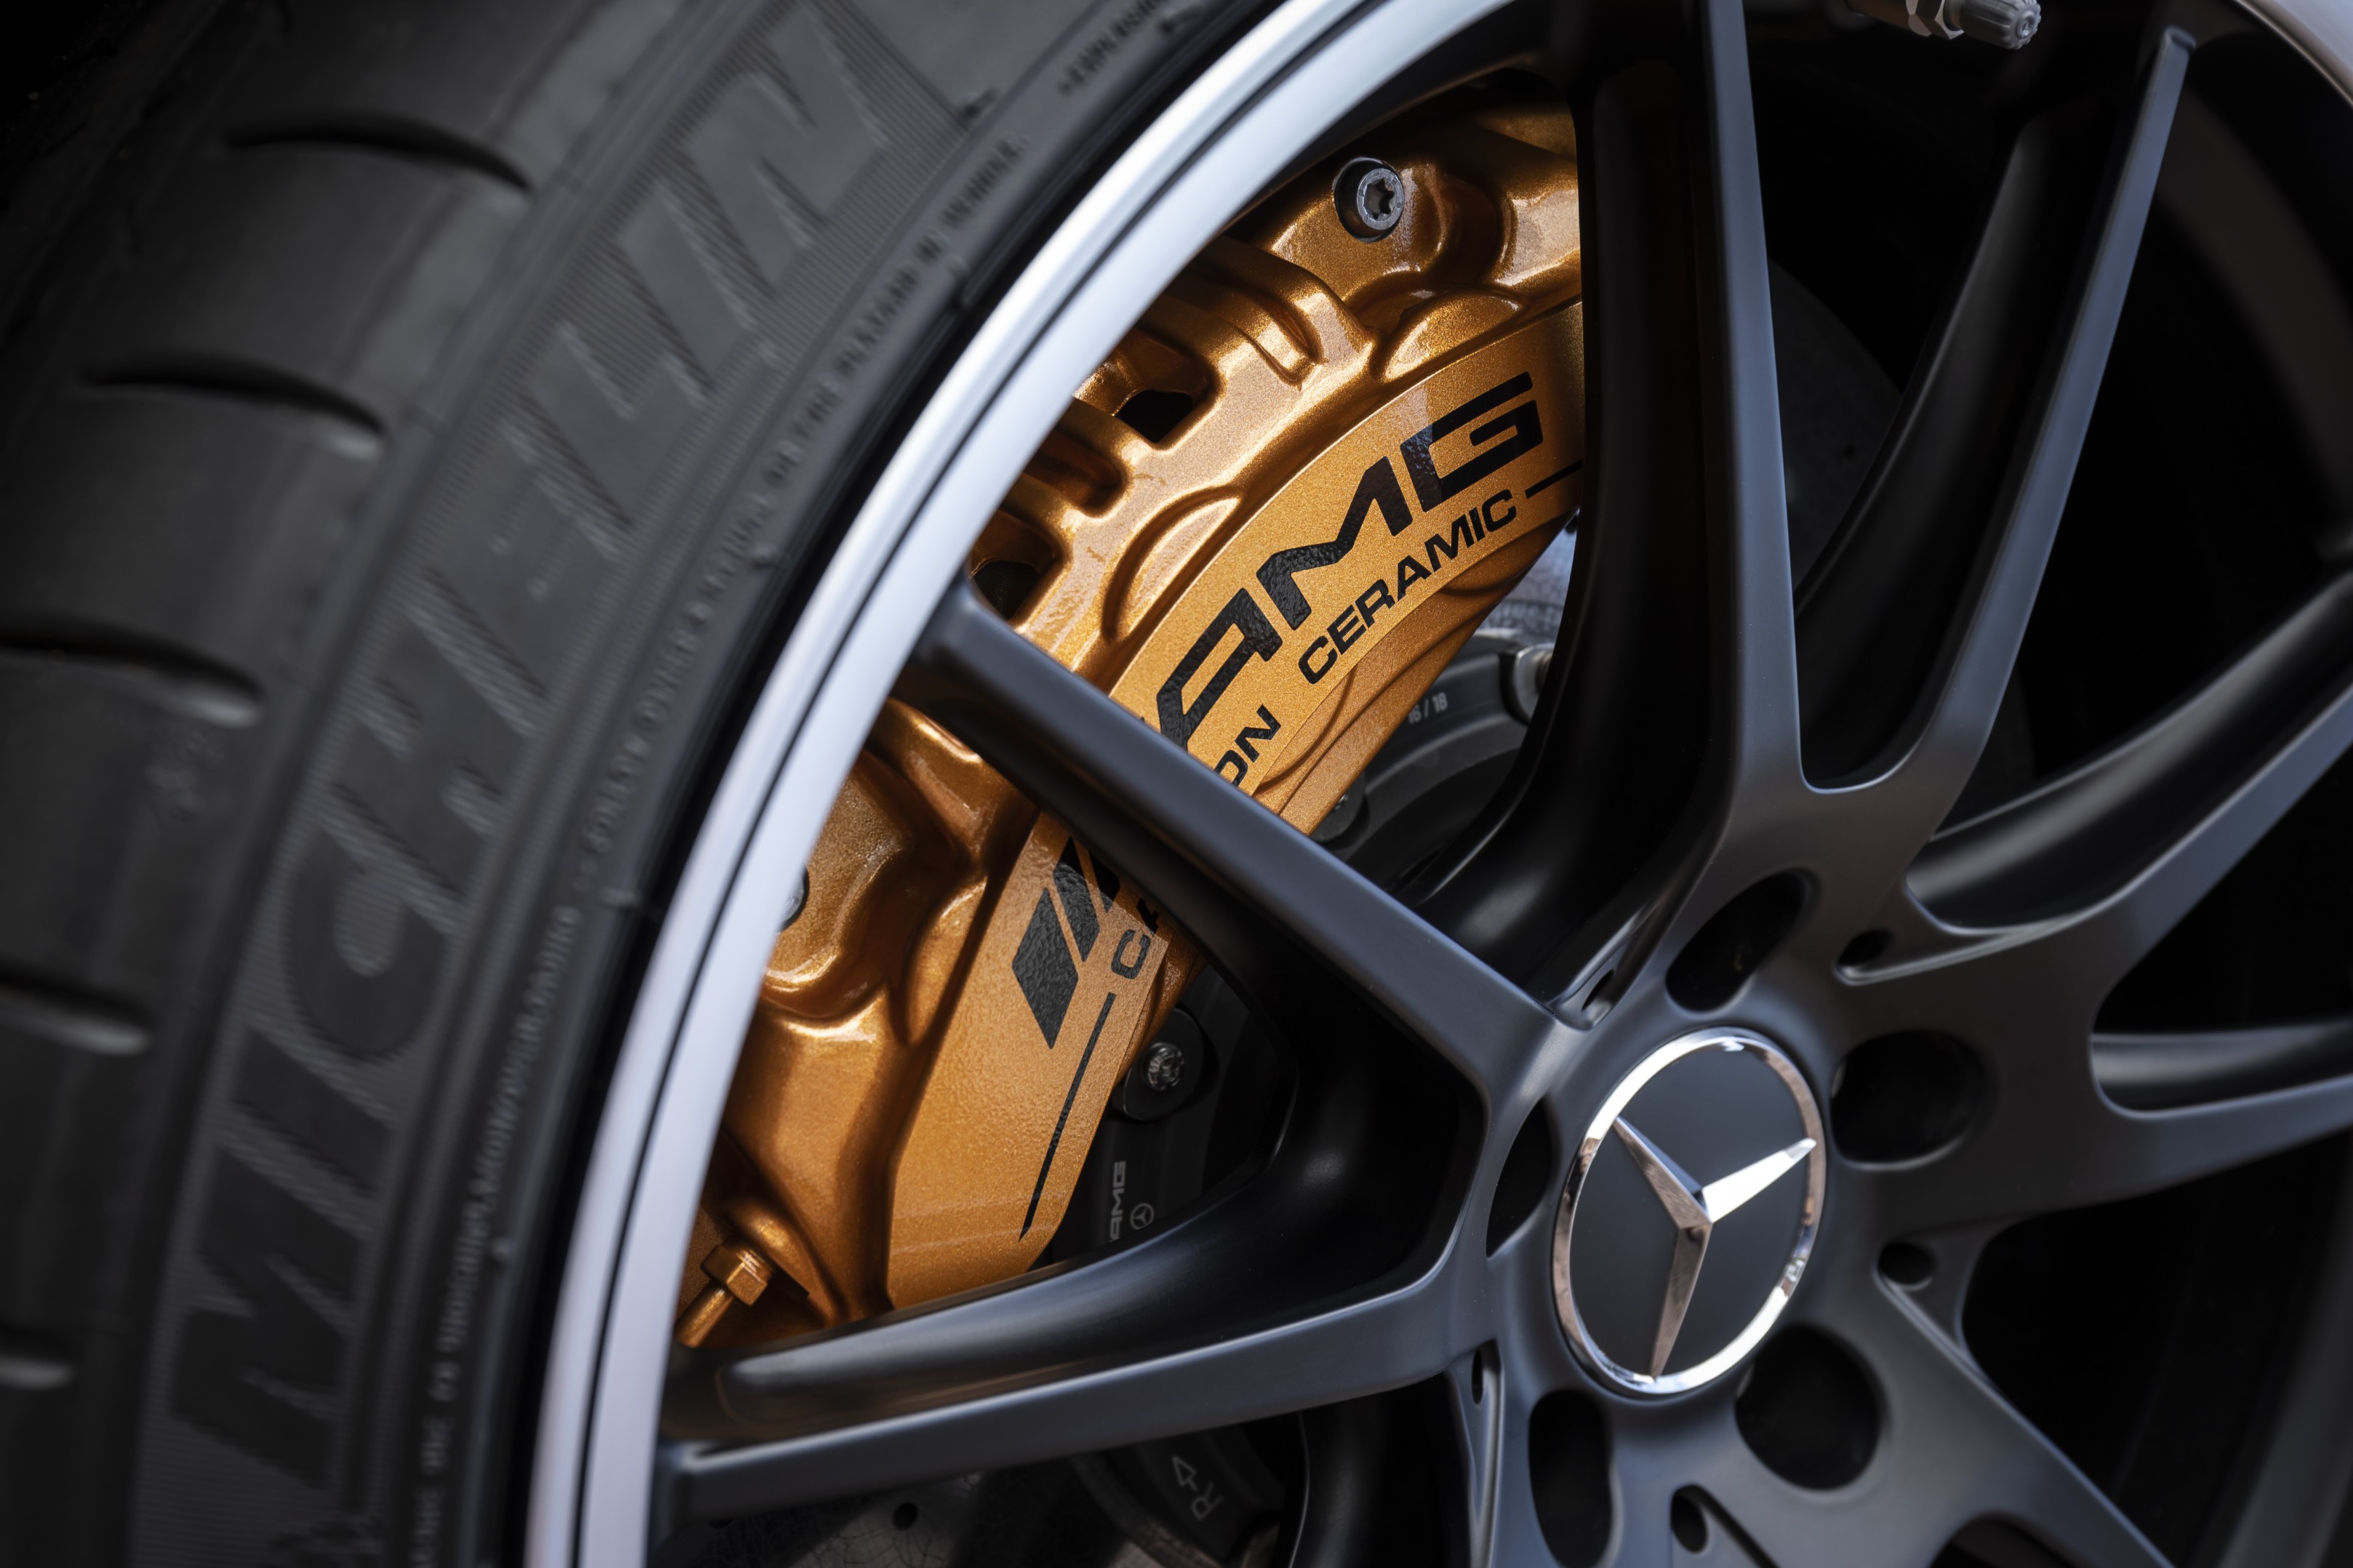 AMG carbon ceramic brakes